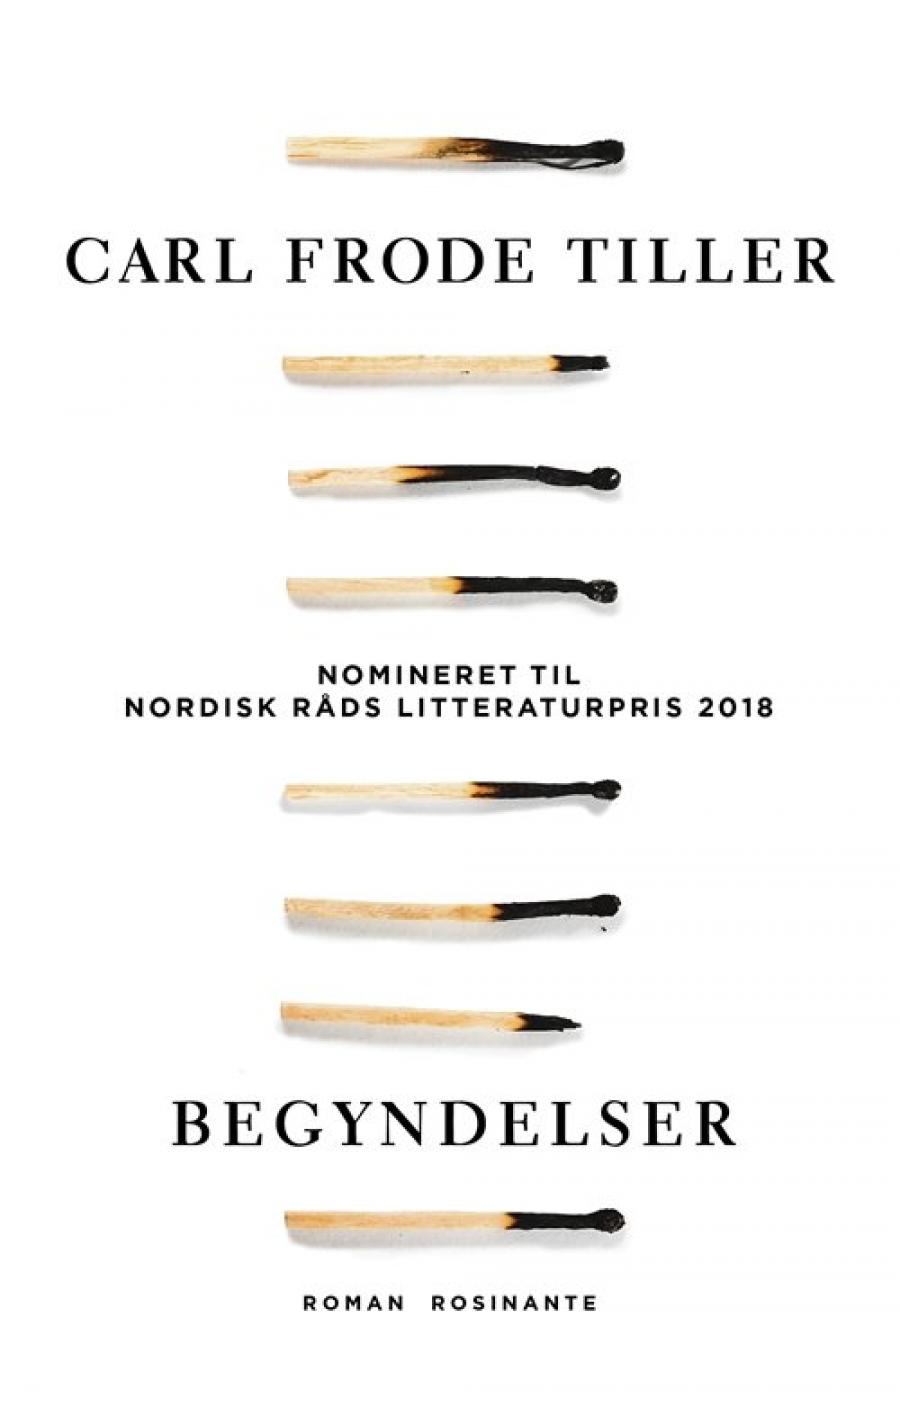 Begyndelser af Carl Frode Tiller